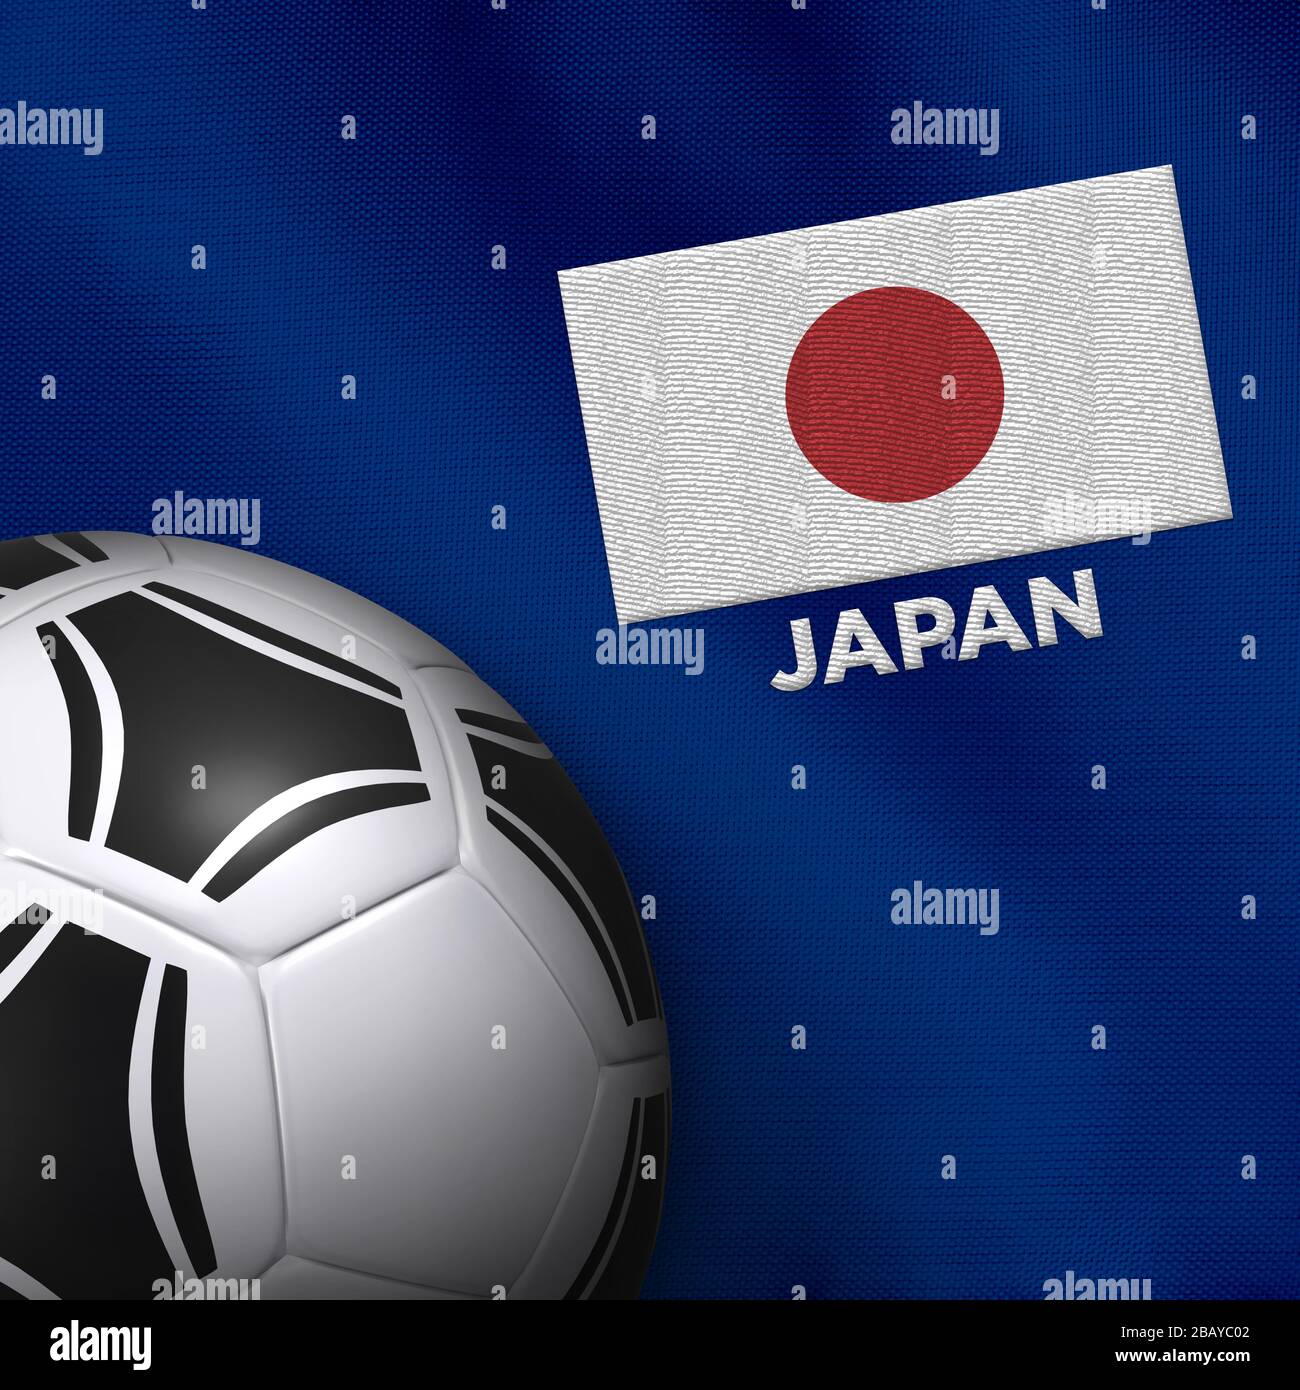 Fußball- und Nationalmannschaftstrikot von Japan. Stockfoto